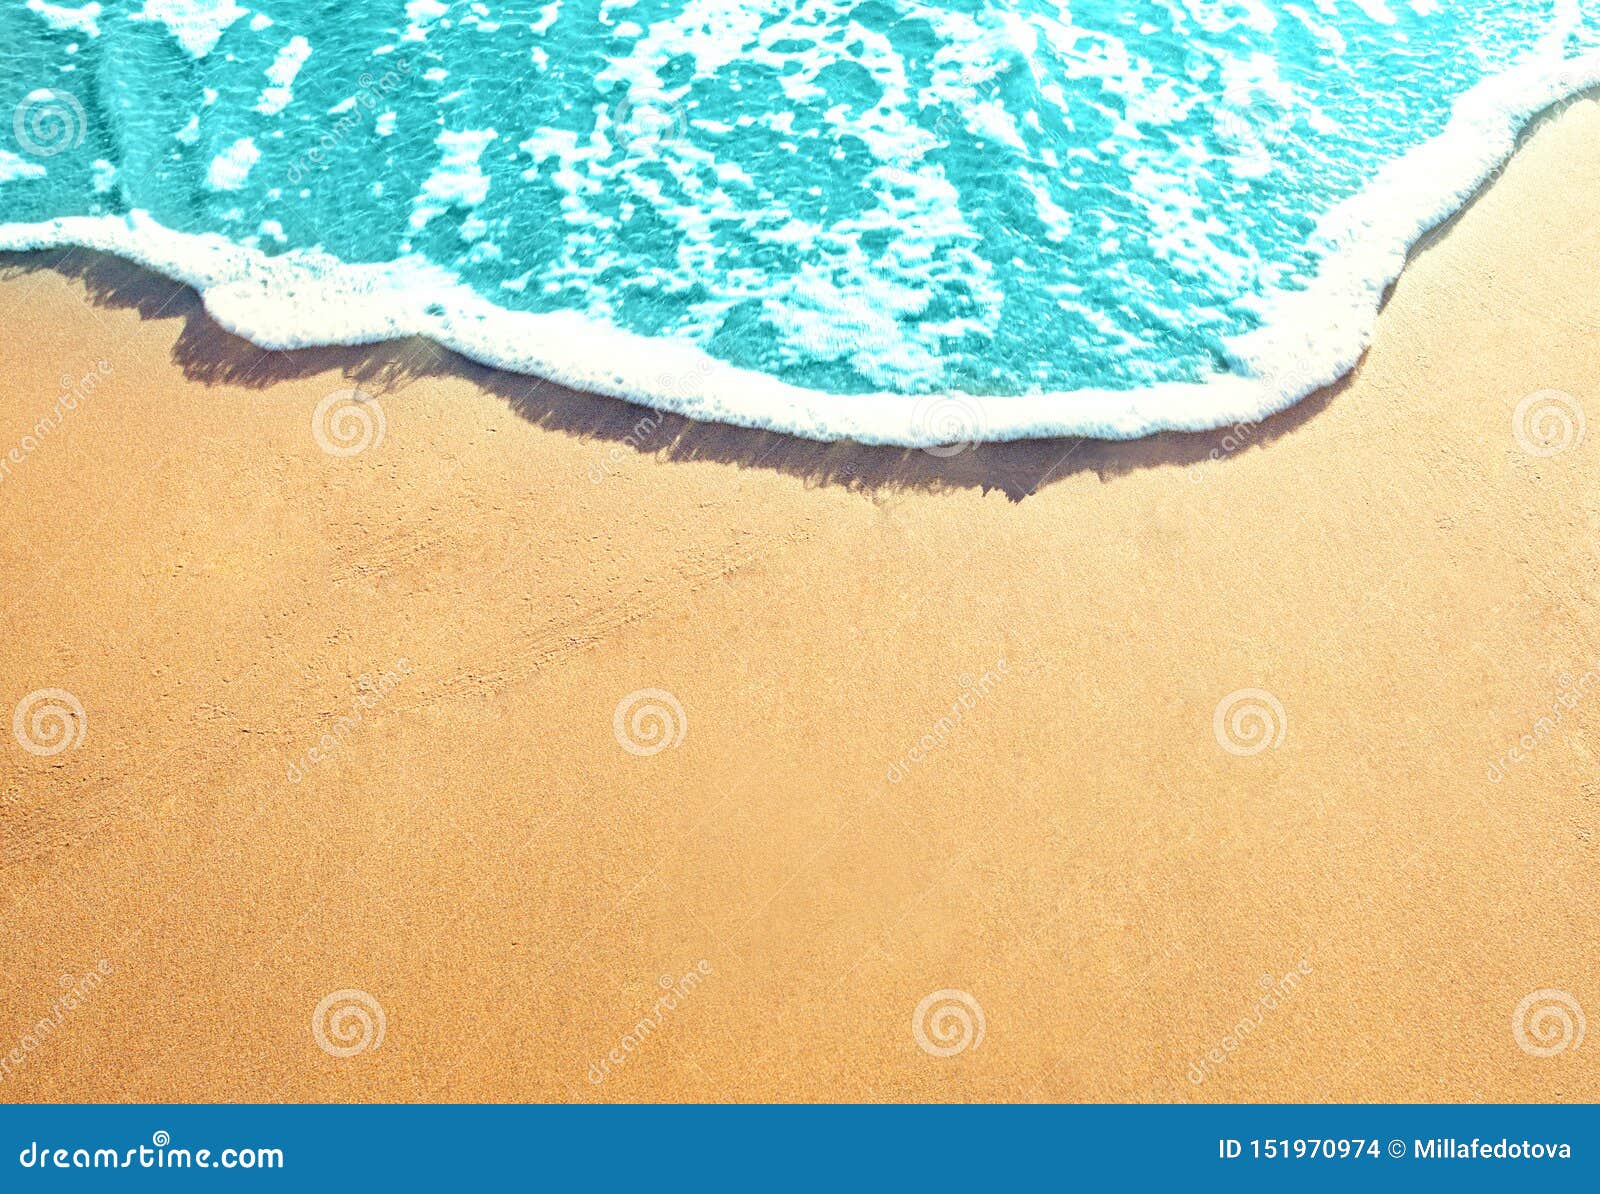 Golden sandy beach with sea surf. Best ocean beaches background.